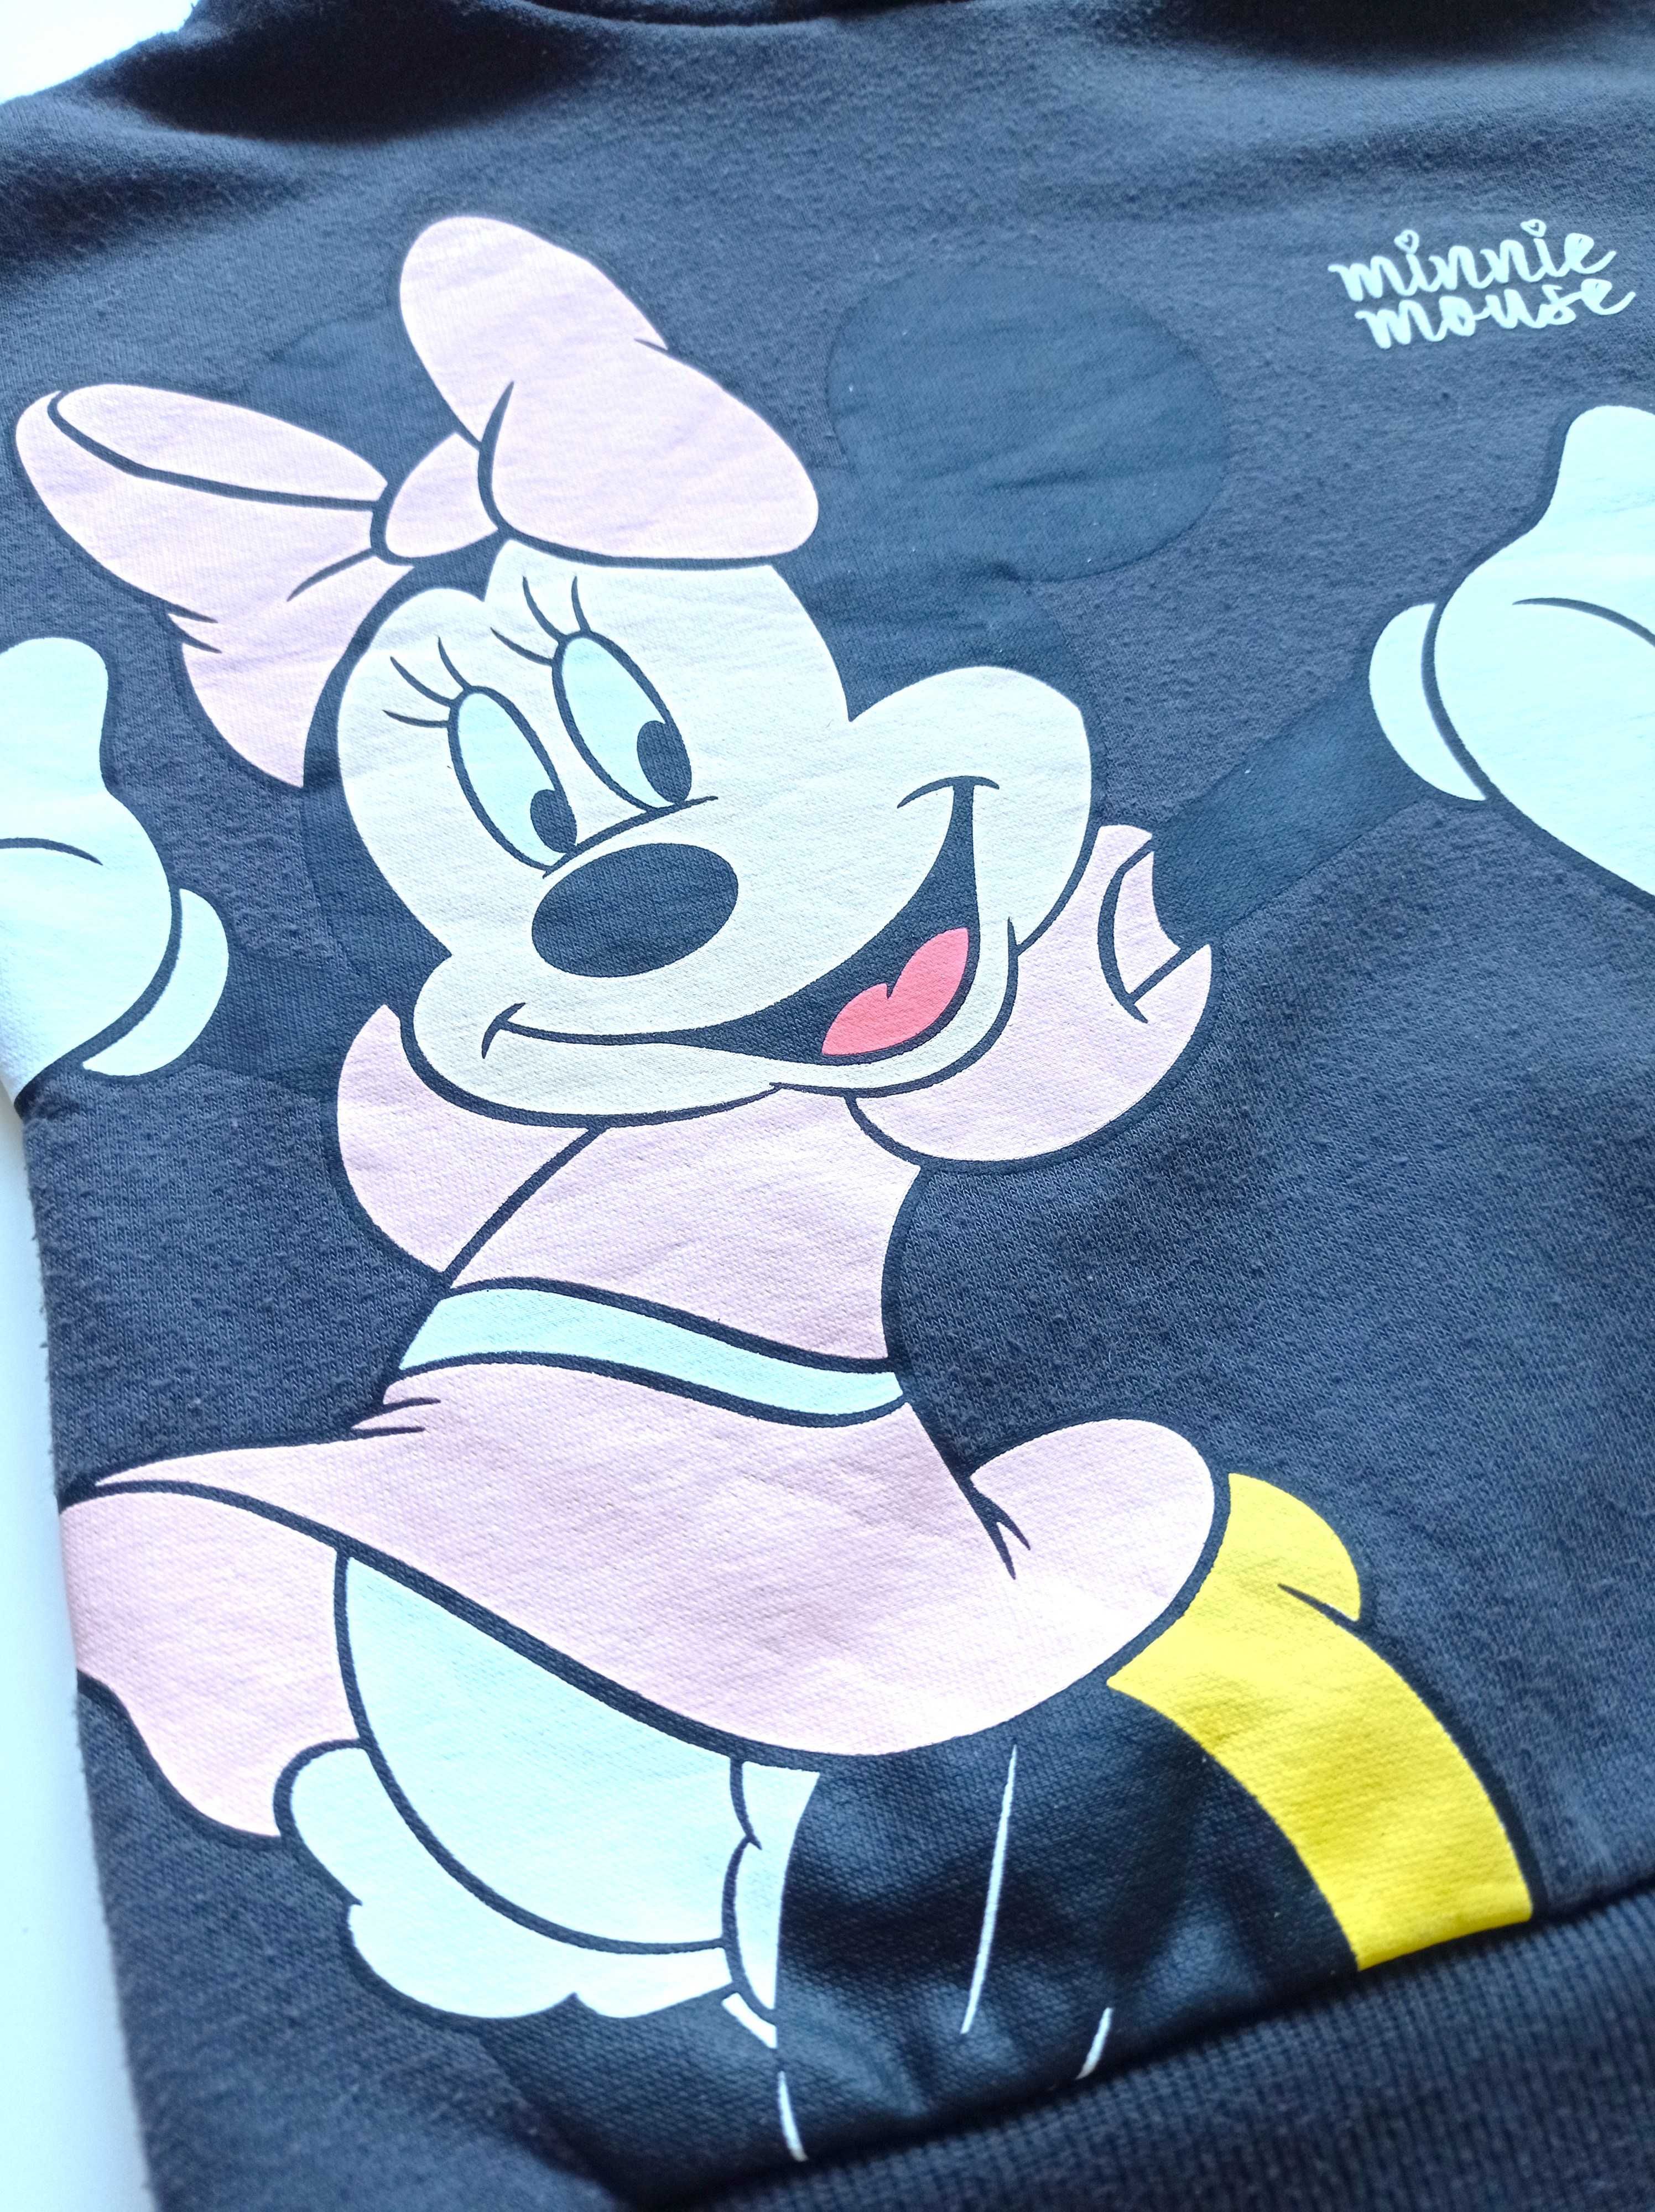 Bluza  Minnie Mouse Disney Primark 98